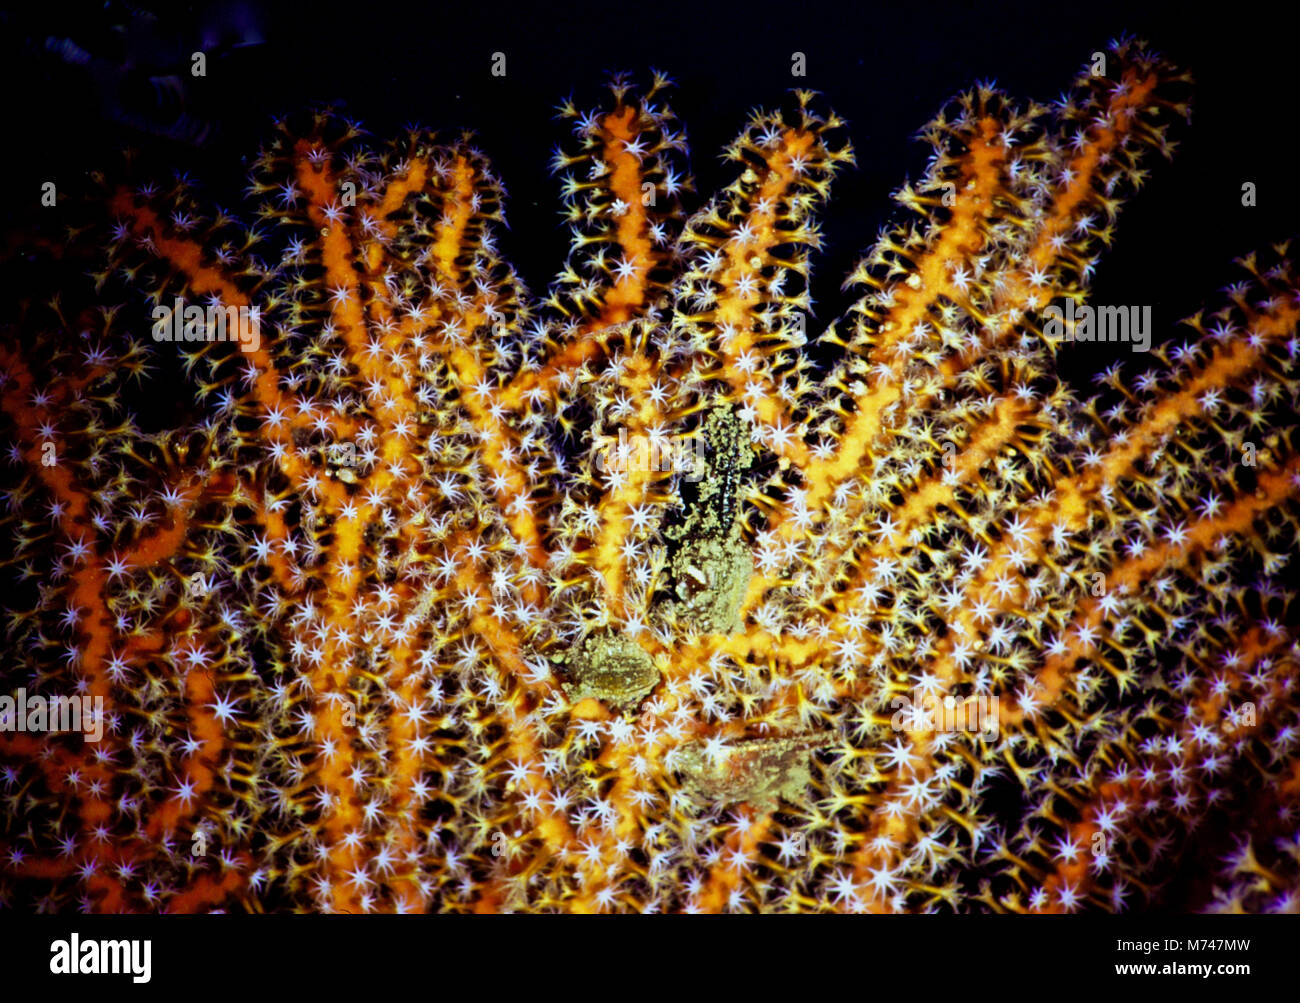 Una gorgonia fan corallo (Acabaria splendens), con i suoi molti otto-tentacled polipi esteso per catturare il passaggio di micro-plancton. Queste colonie di minuscoli animali delicati, che vivono nel loro colorati scheletri comunali, servono per illustrare la fragilità e la bellezza delle foreste tropicali e sub-tropicali le barriere coralline. Purtroppo, tali barriere coralline stanno morendo; nel corso di un trimestre sono state ridotte in macerie durante gli ultimi venti anni. Questa tendenza è di continuare. Essi sono i più vulnerabili del nostro pianeta che gli ecosistemi, come essi sono molto limitate capacità di adattarsi a temperature crescenti e acidificazione. Mar Rosso egiziano. Foto Stock